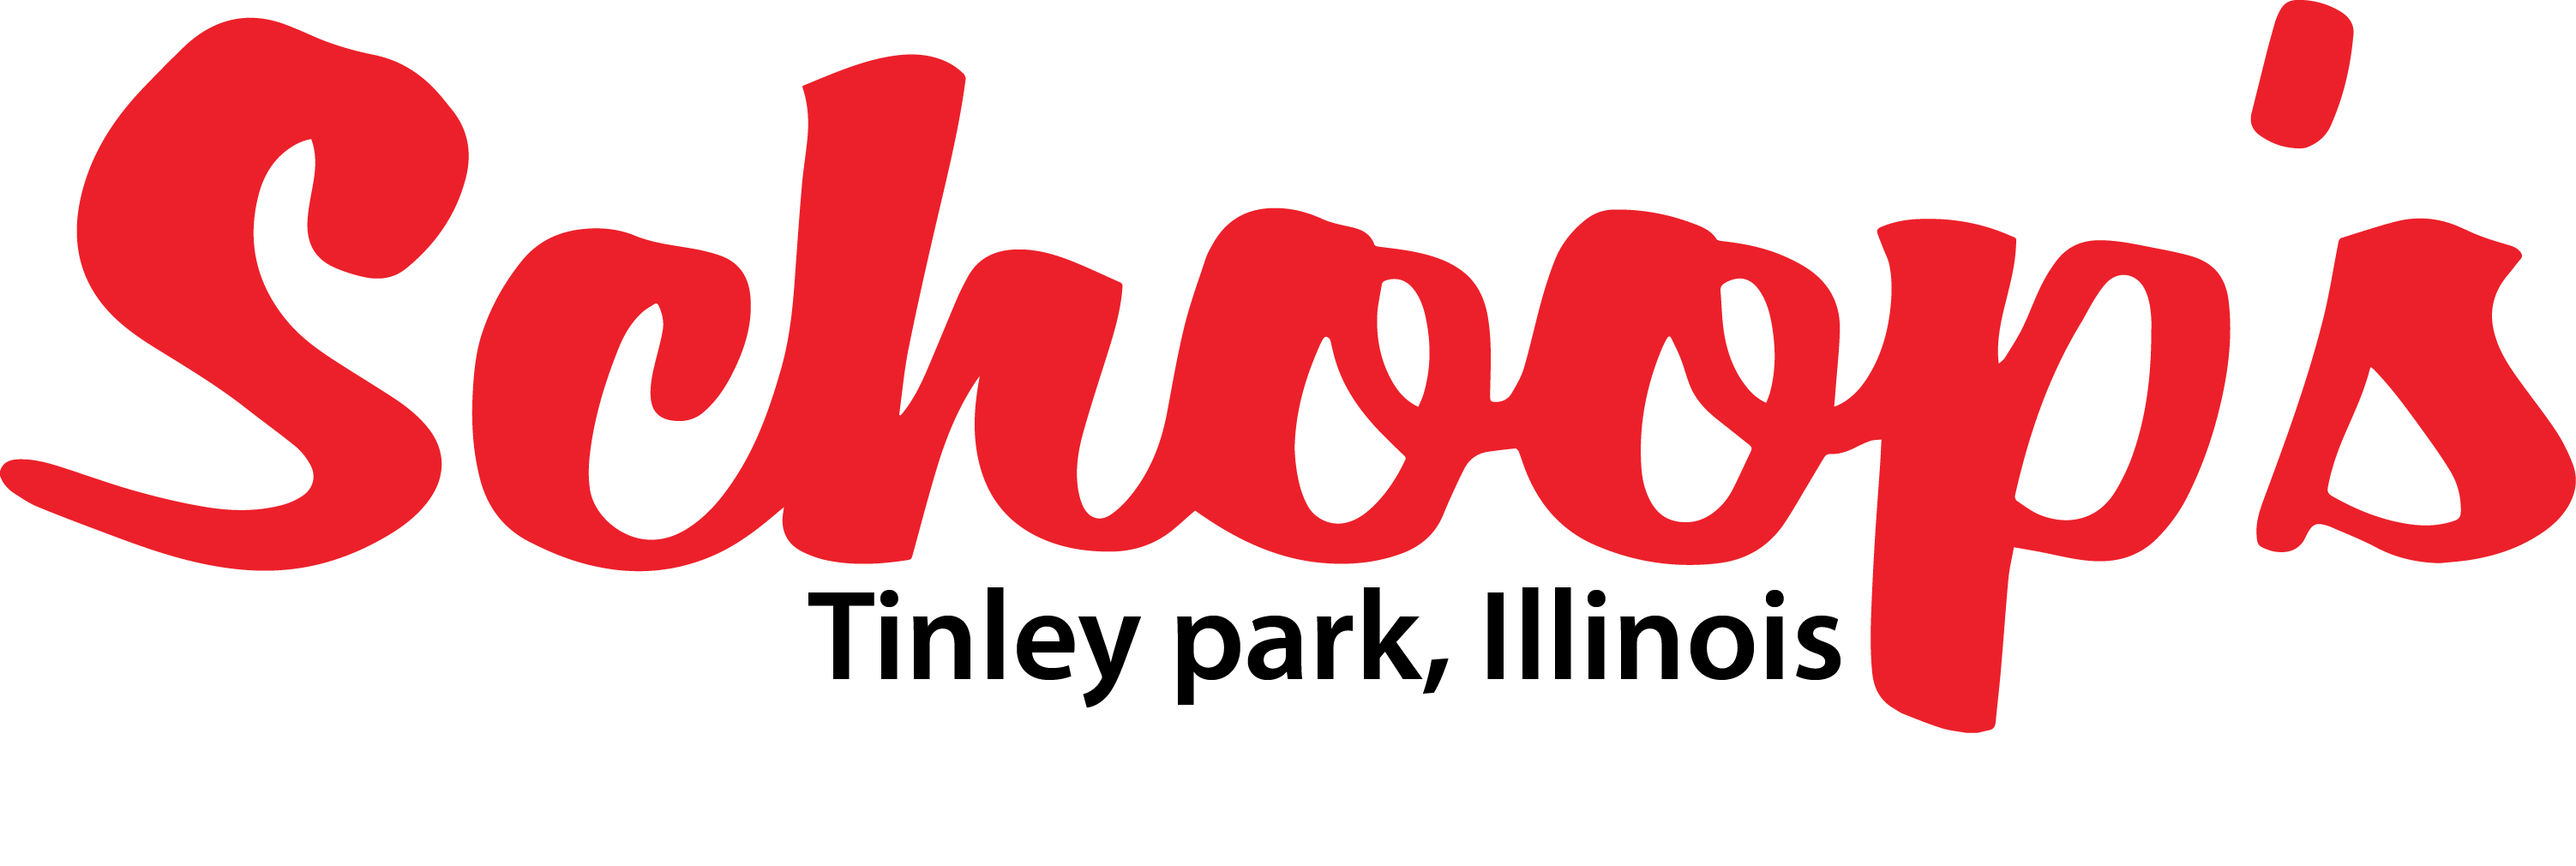 Schoop's Logo